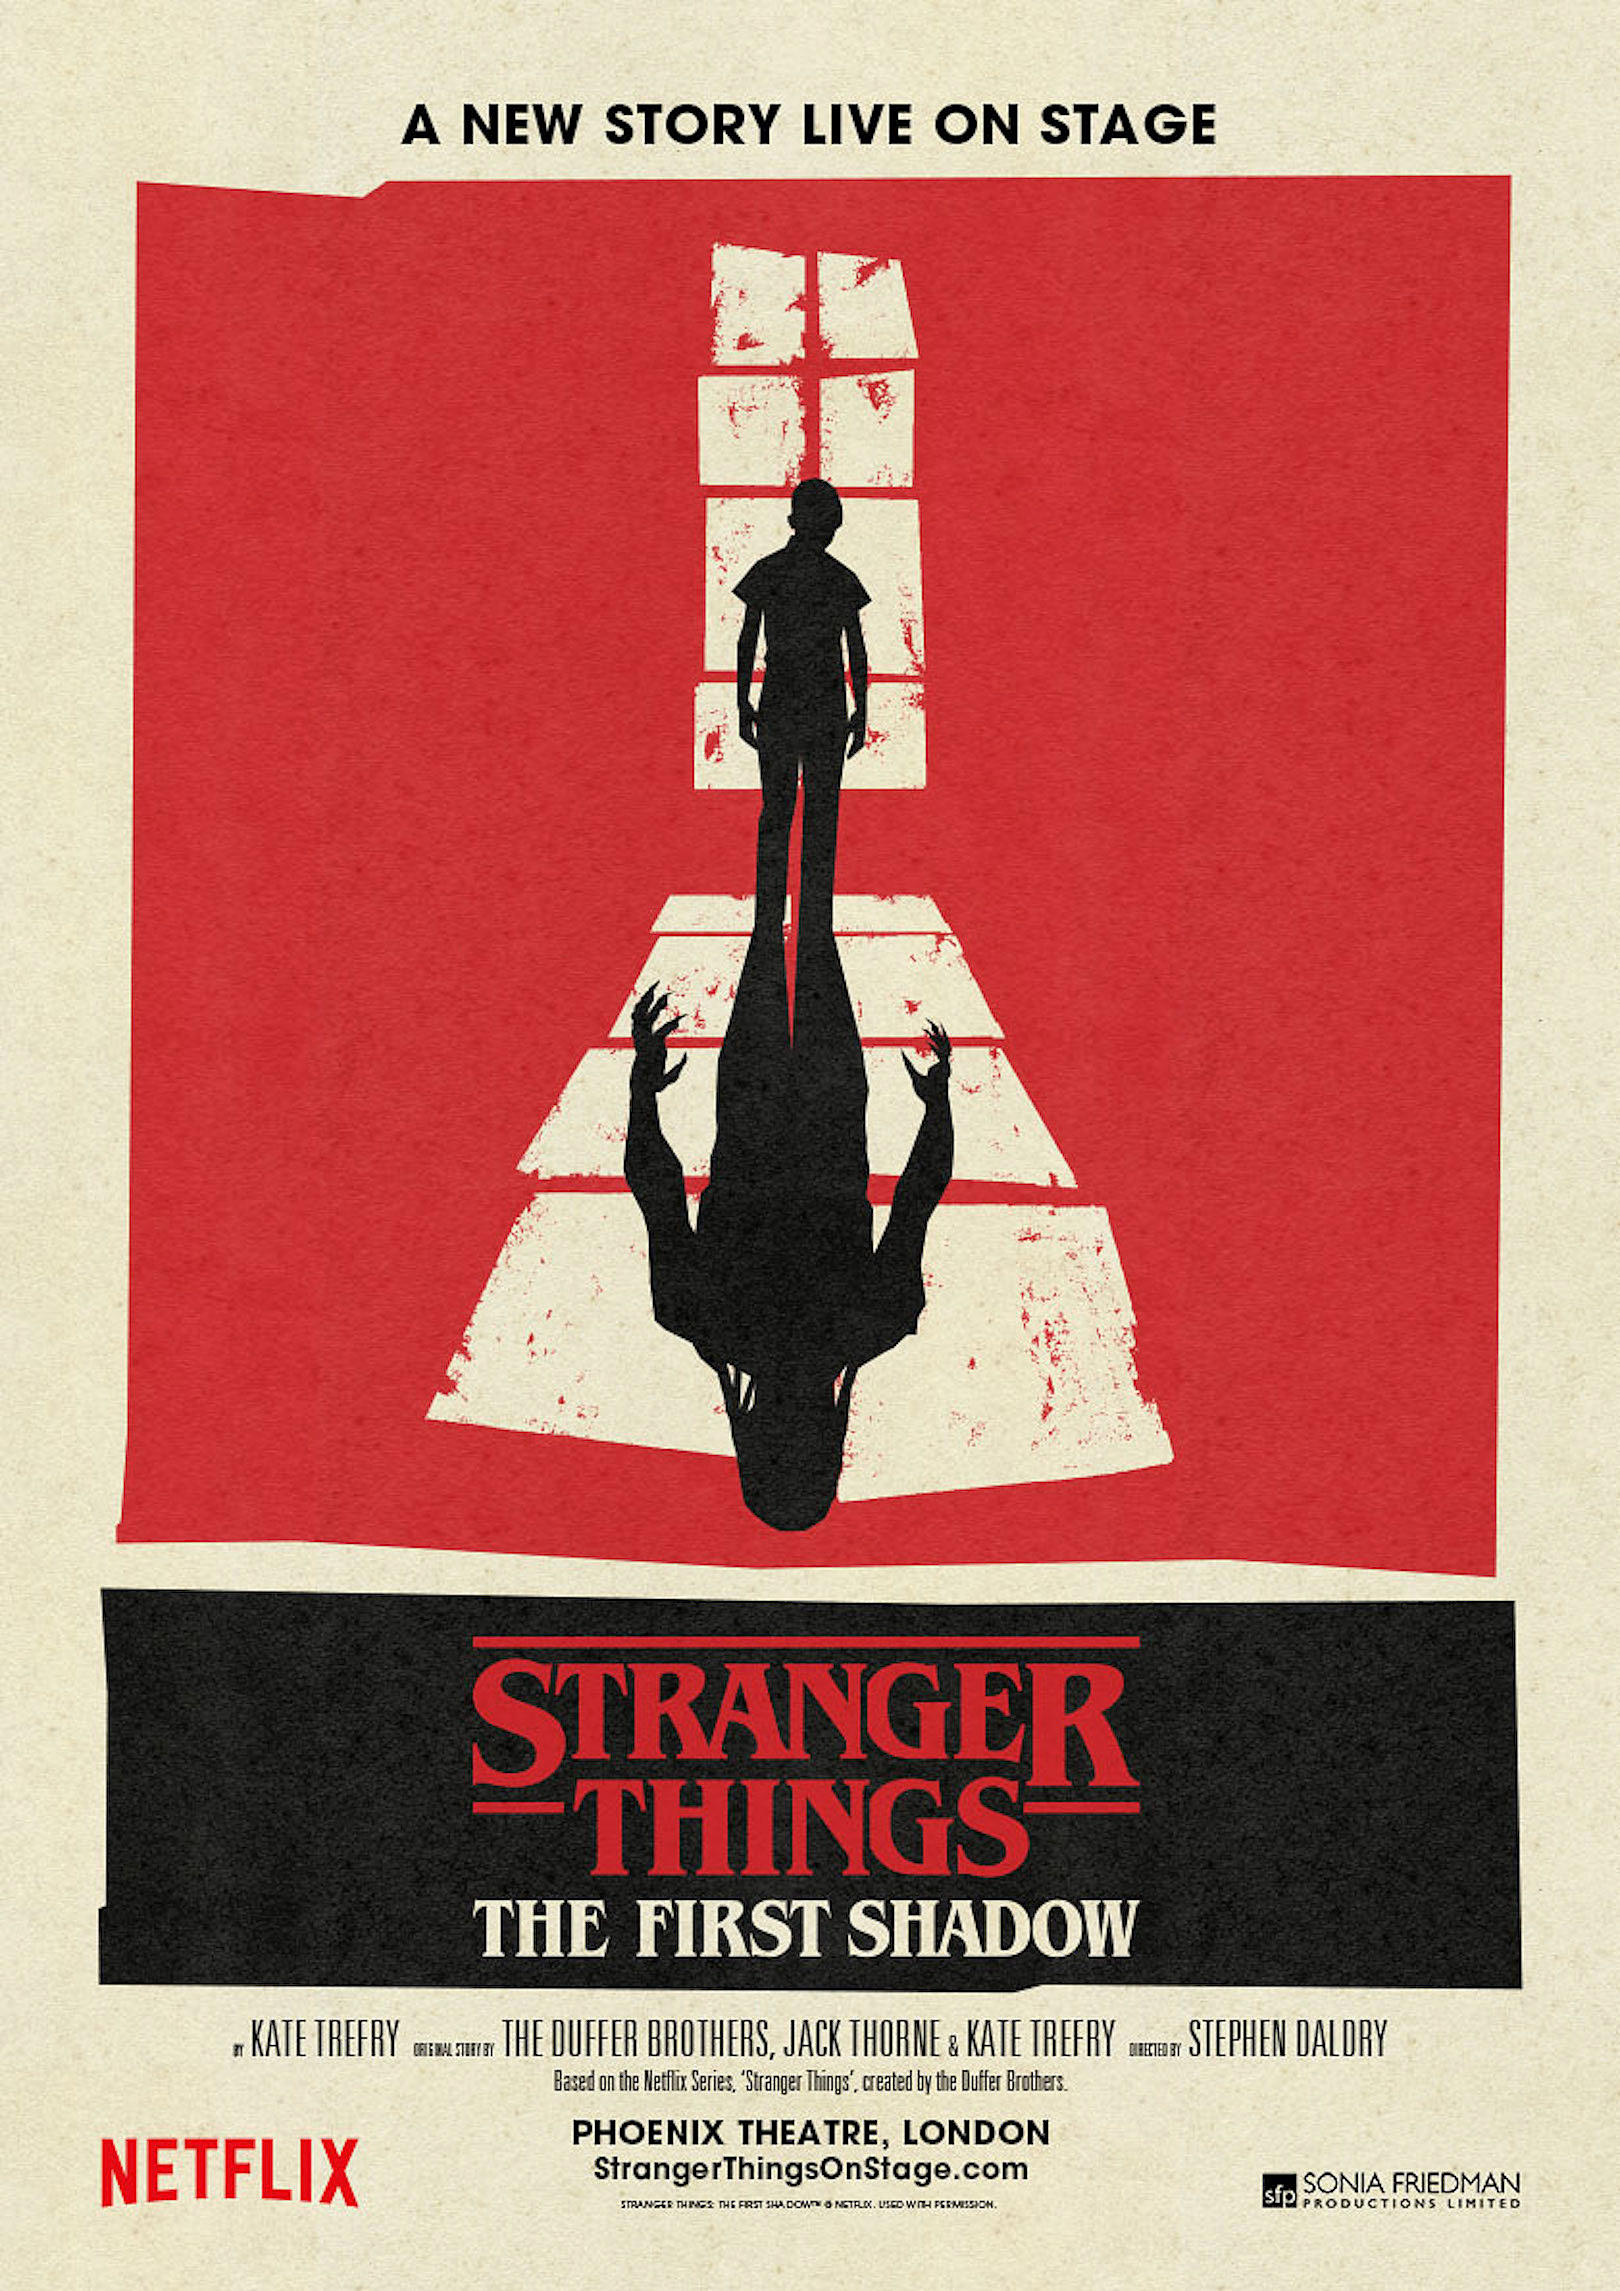 Stranger Things Season 4 Posters Tease Return of Hopper and Joyce